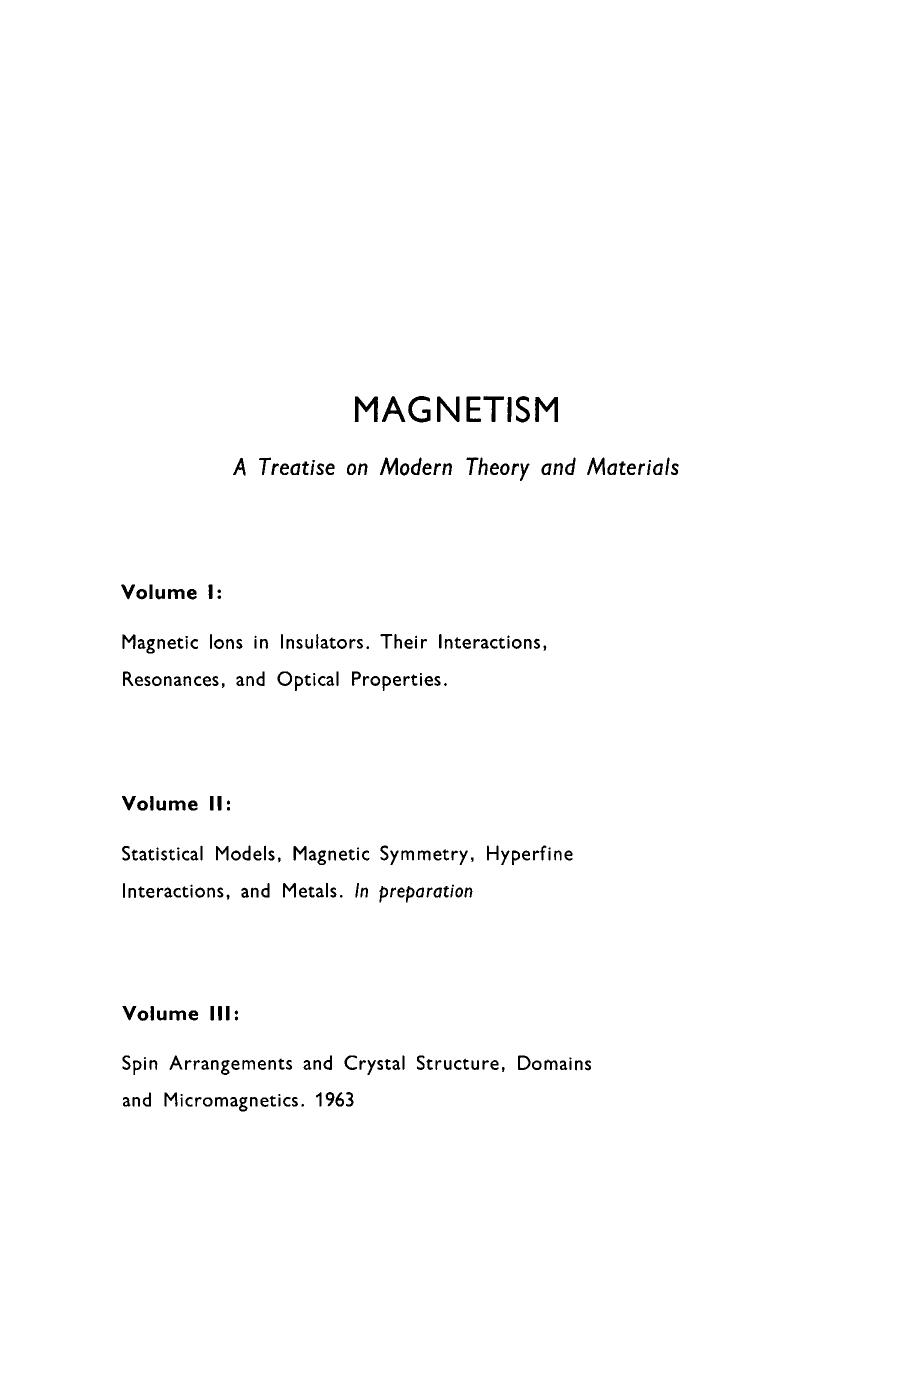 Magnetism Volume 1